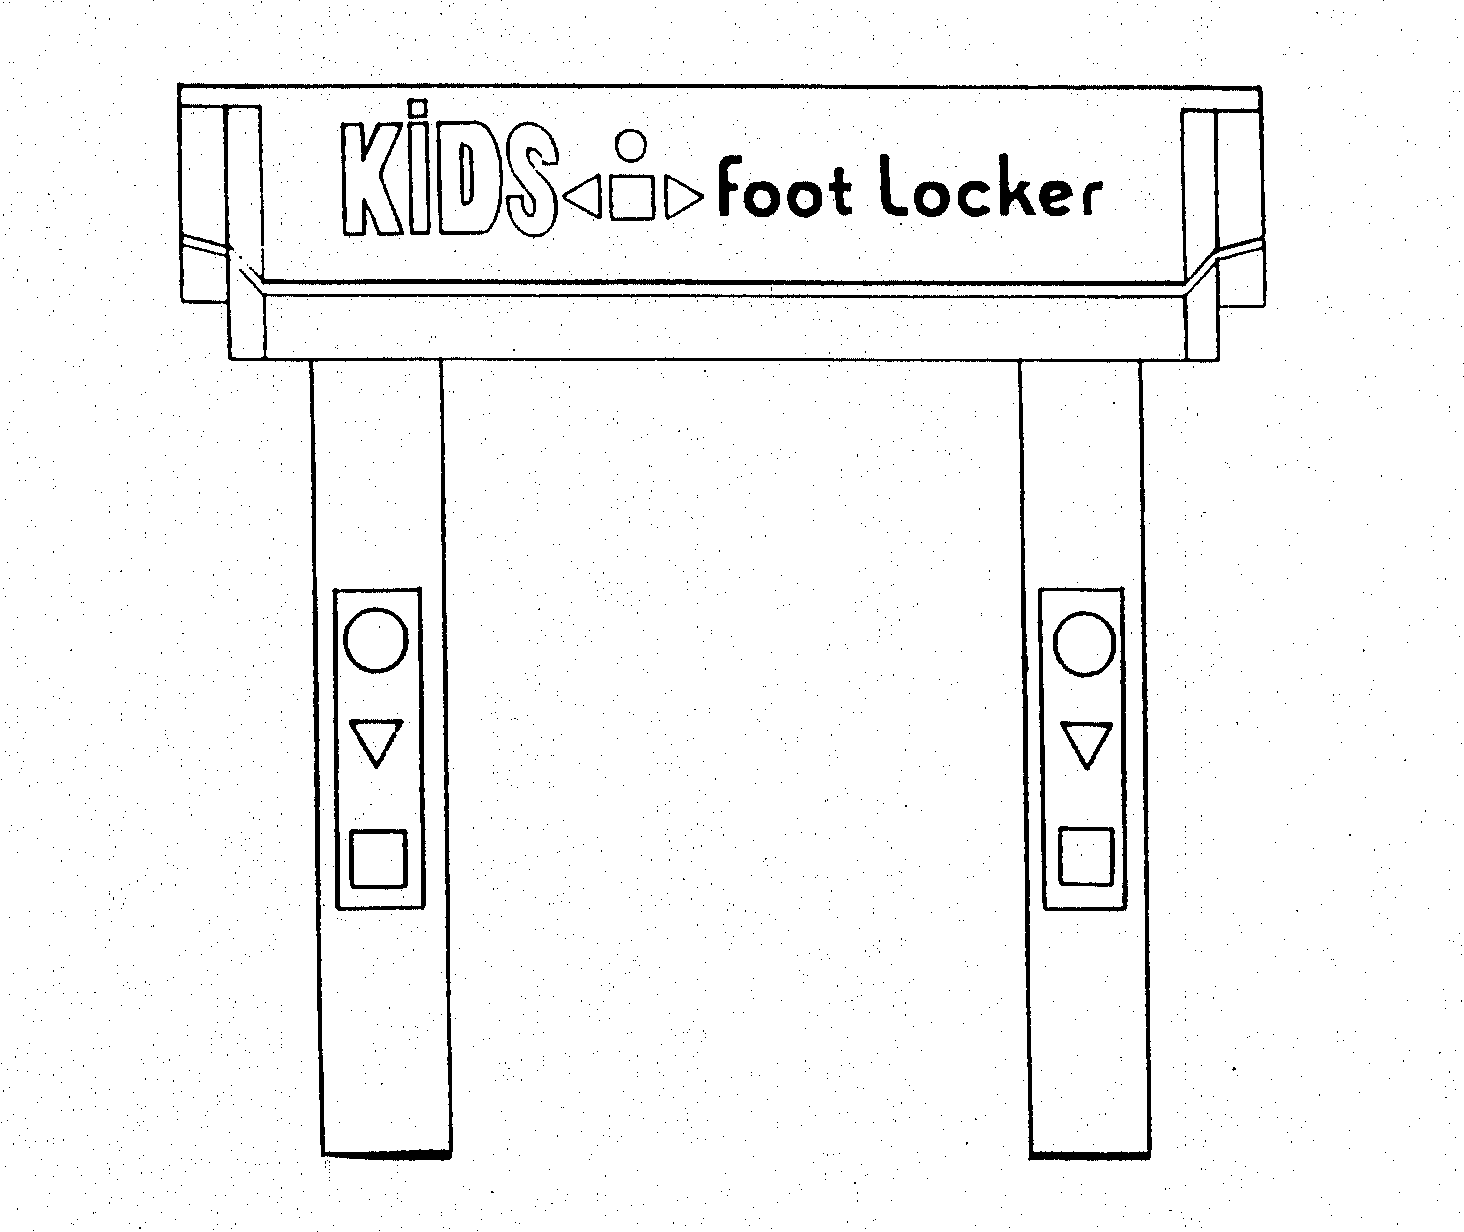  KIDS FOOTLOCKER